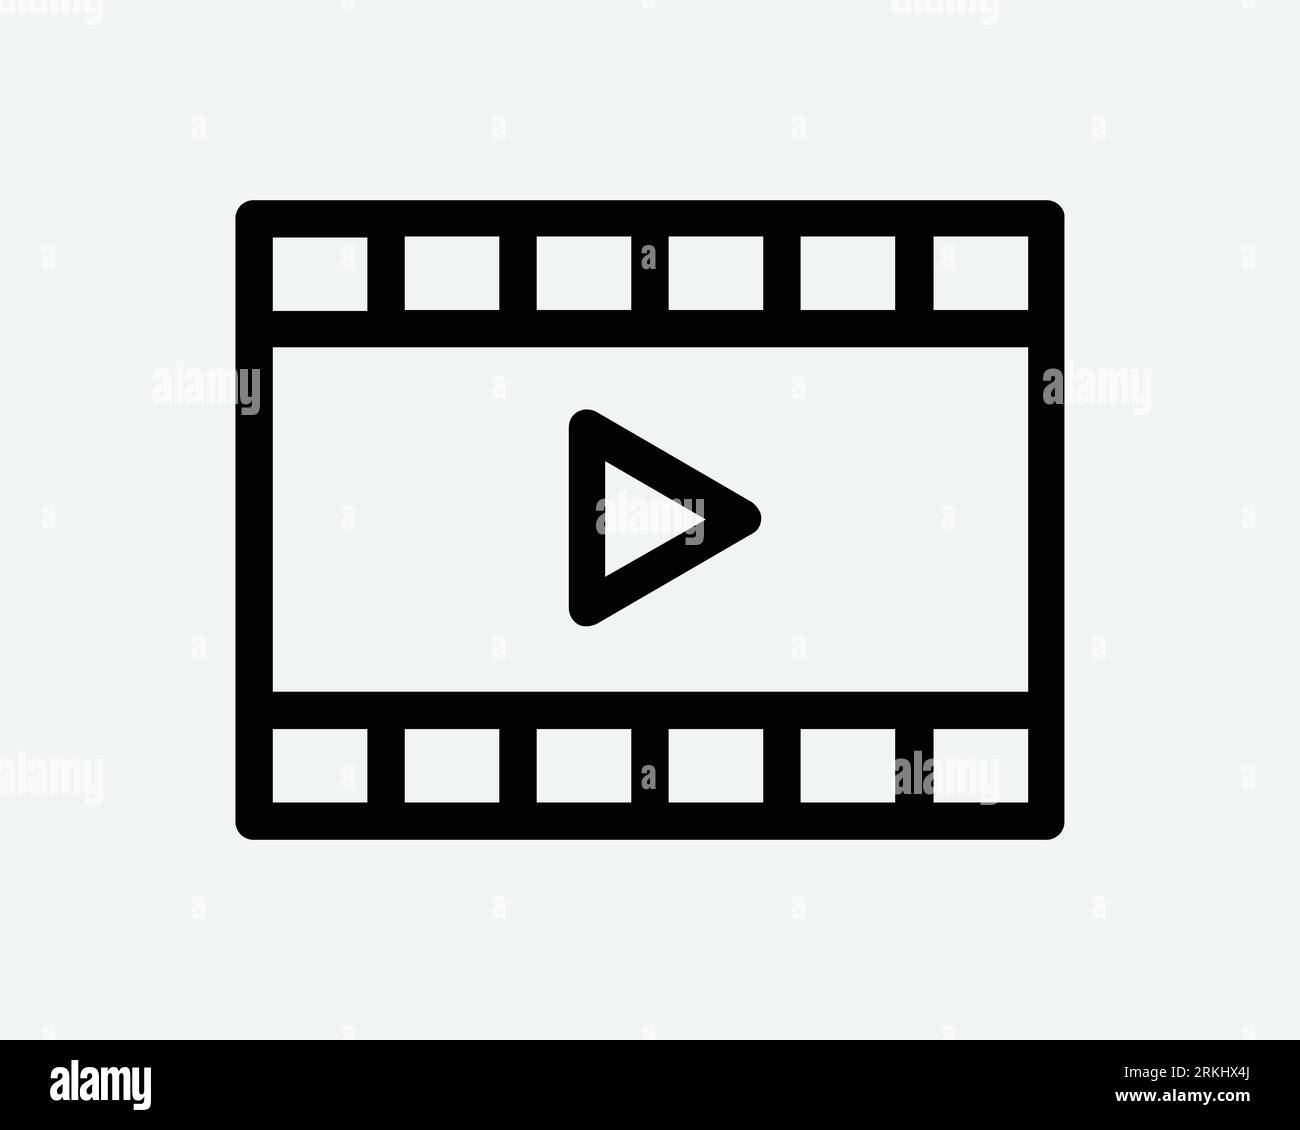 Filmsymbol Medien Film Video Kino Fotounterhaltung Rollenstreifen Schwarz Weiß Konturform Vektor Clipart Grafische Illustration Artwork Sign Symbol Stock Vektor